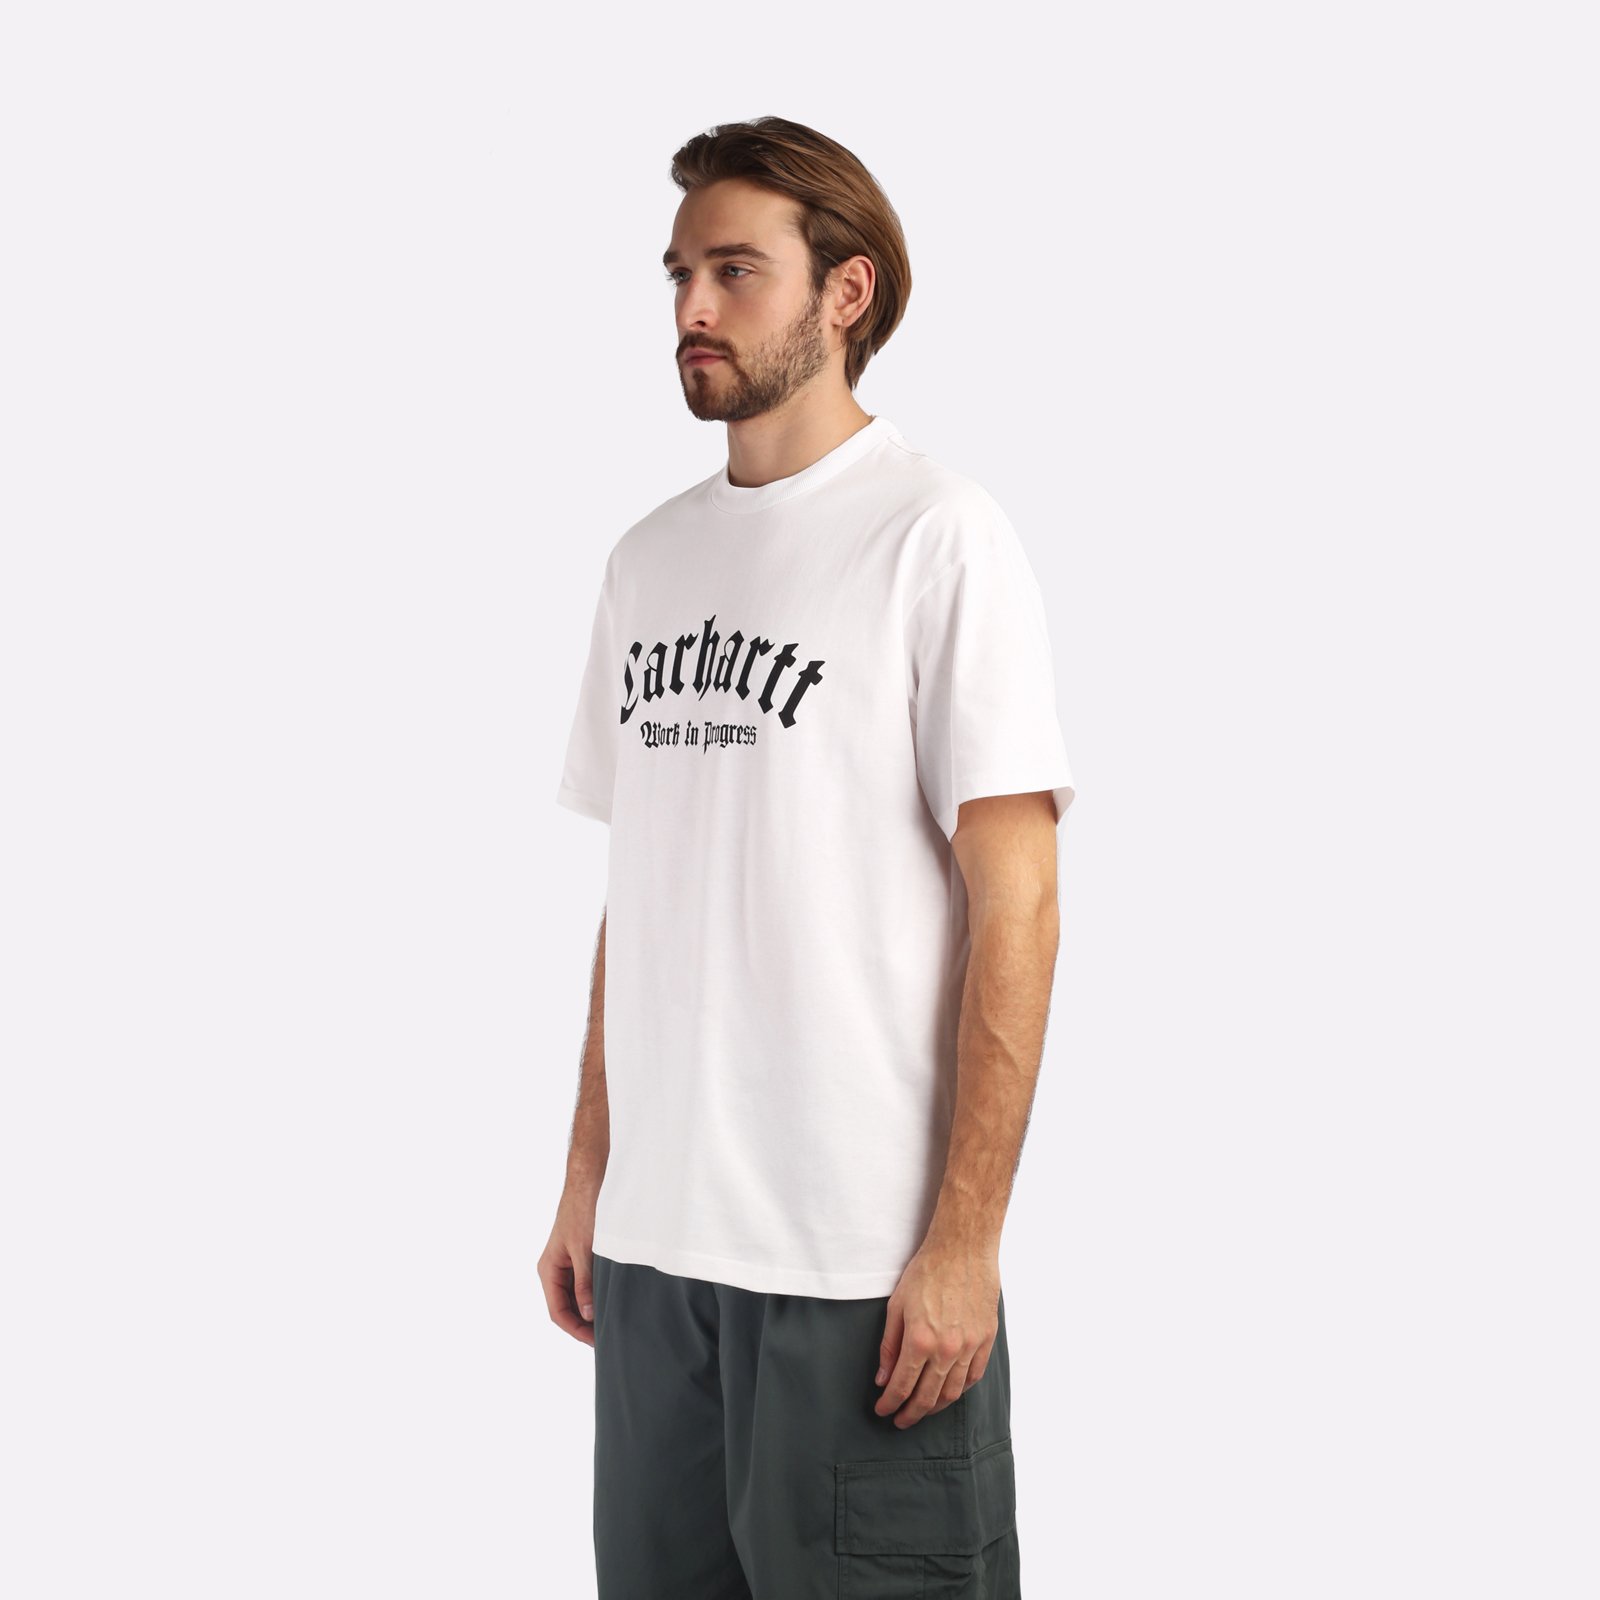 мужская белая футболка Carhartt WIP S/S Onyx T-Shirt I032875-white/black - цена, описание, фото 3